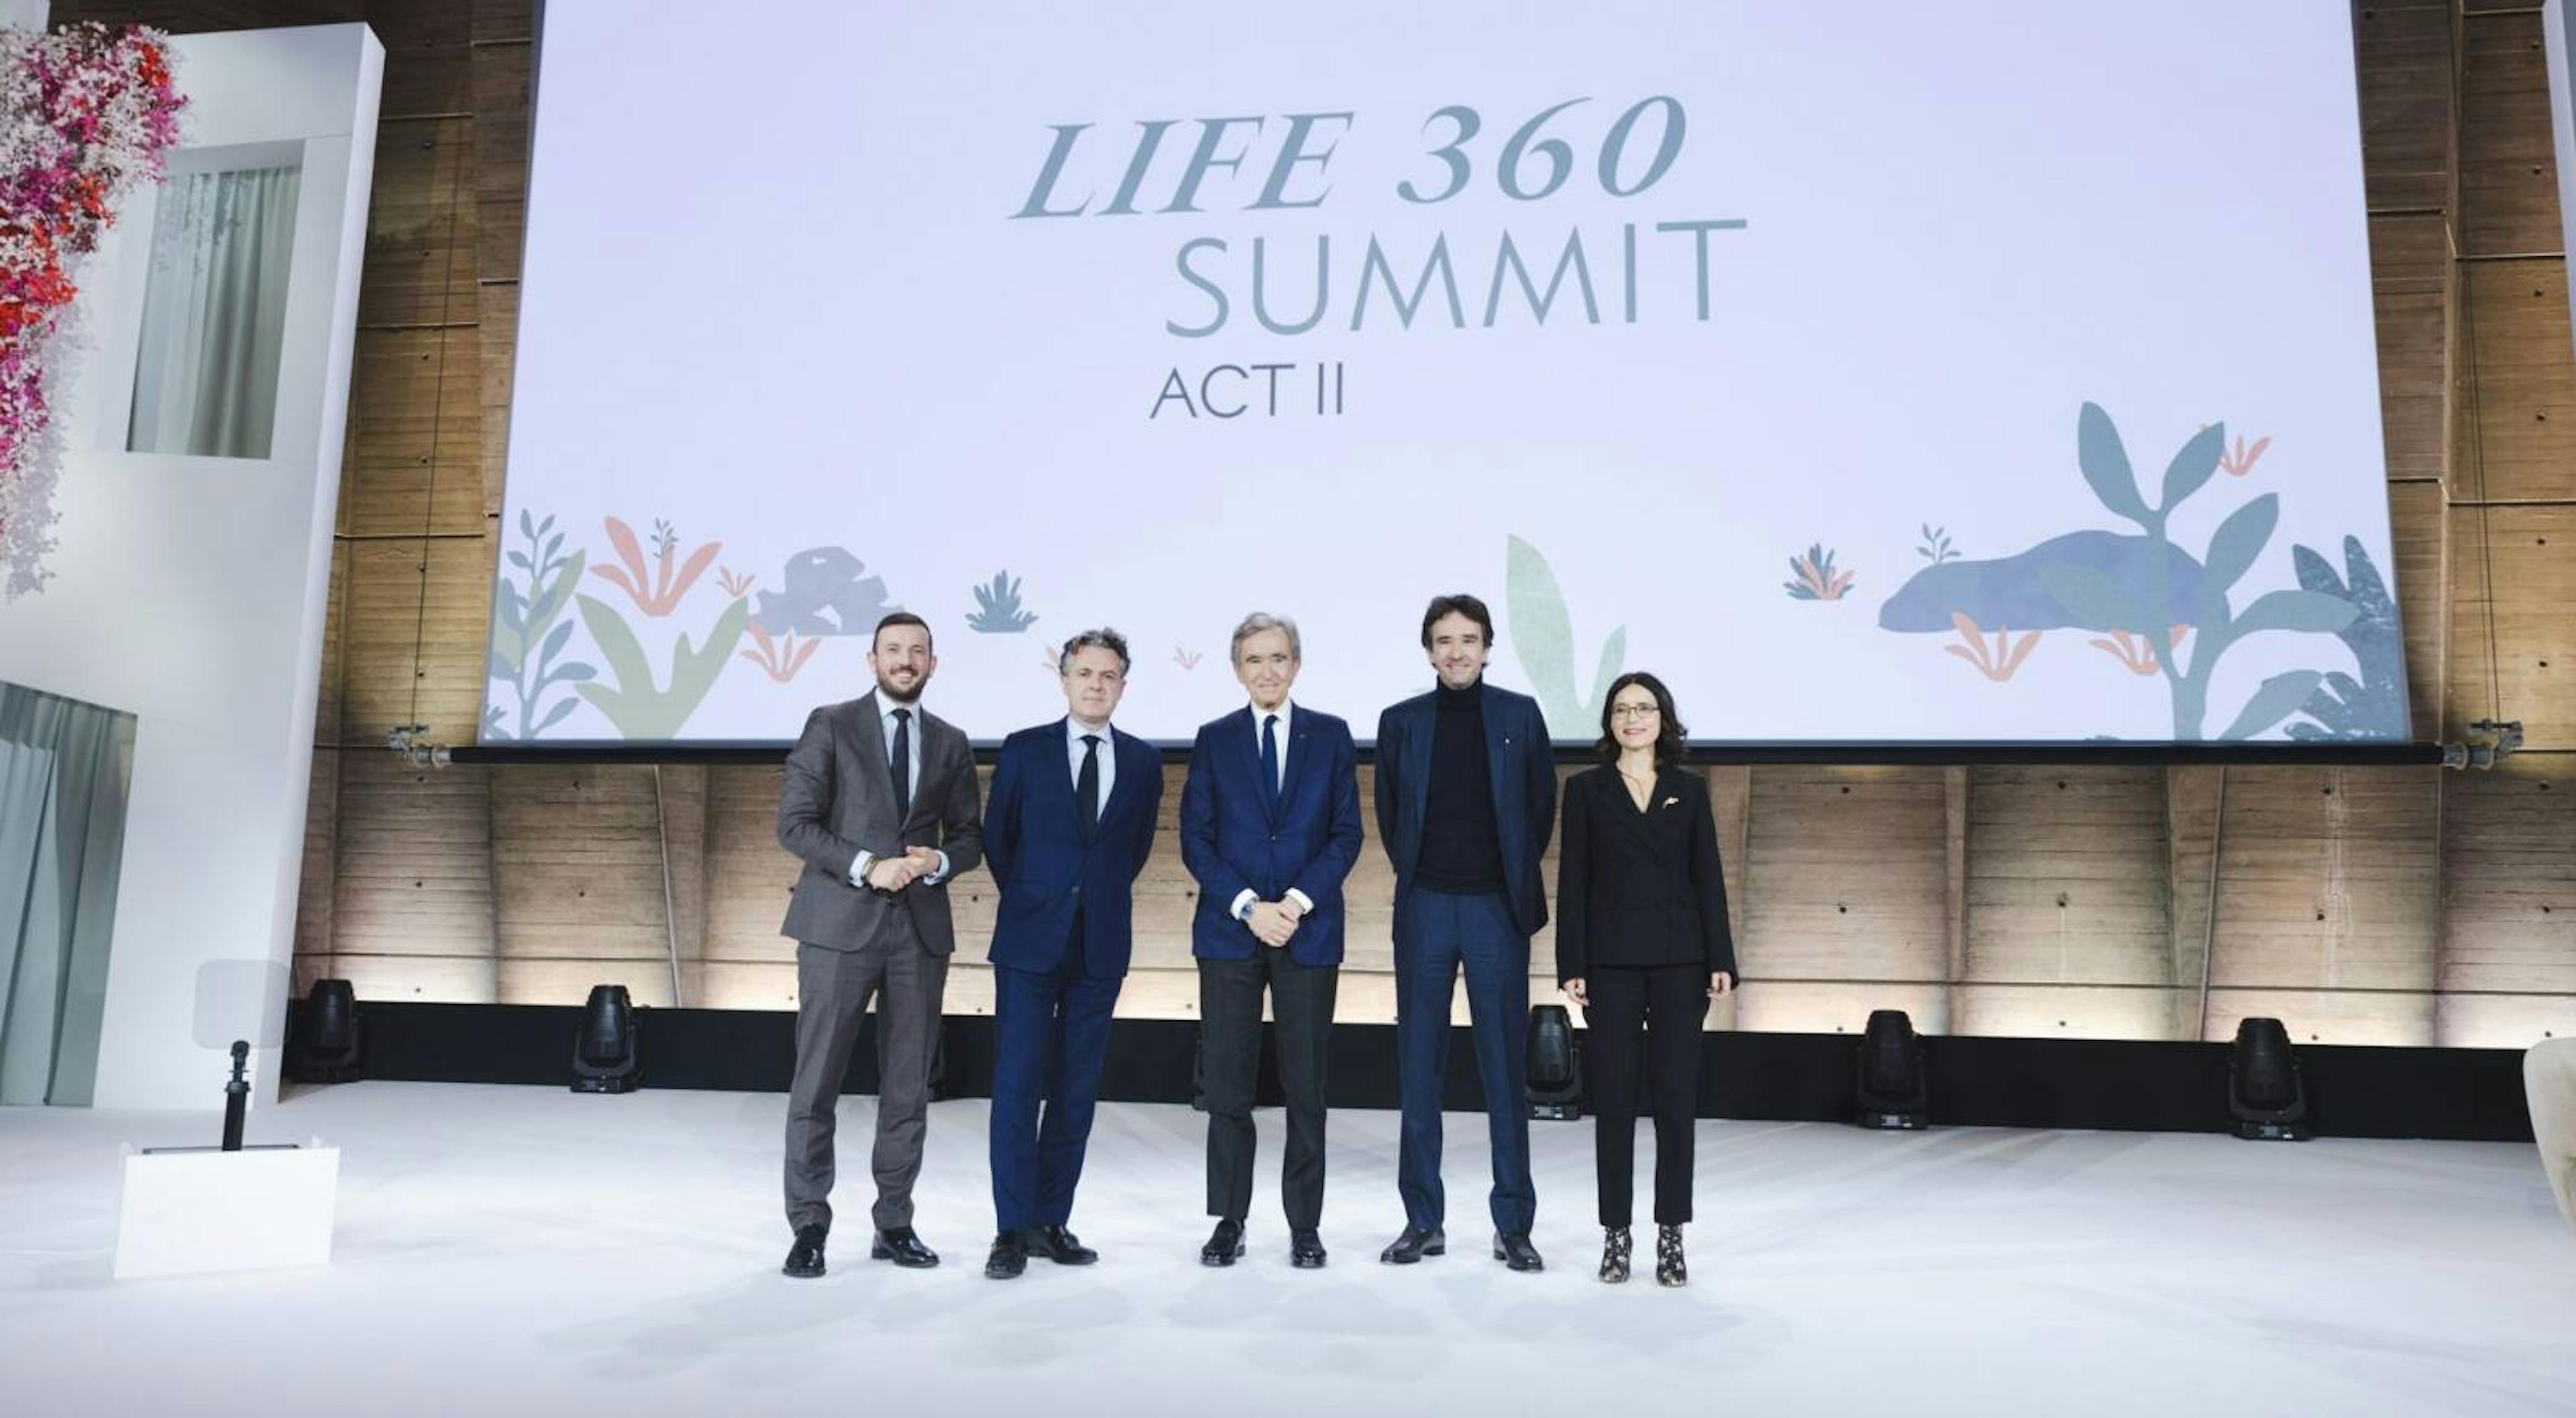 Banner In occasione del LIFE 360 Summit, LVMH svela i primi risultati della sua strategia ambientale e punta a ridurre le emissioni indirette di gas serra (obiettivo 3) annunciando un nuovo programma d’azione: LIFE 360 Business Partners